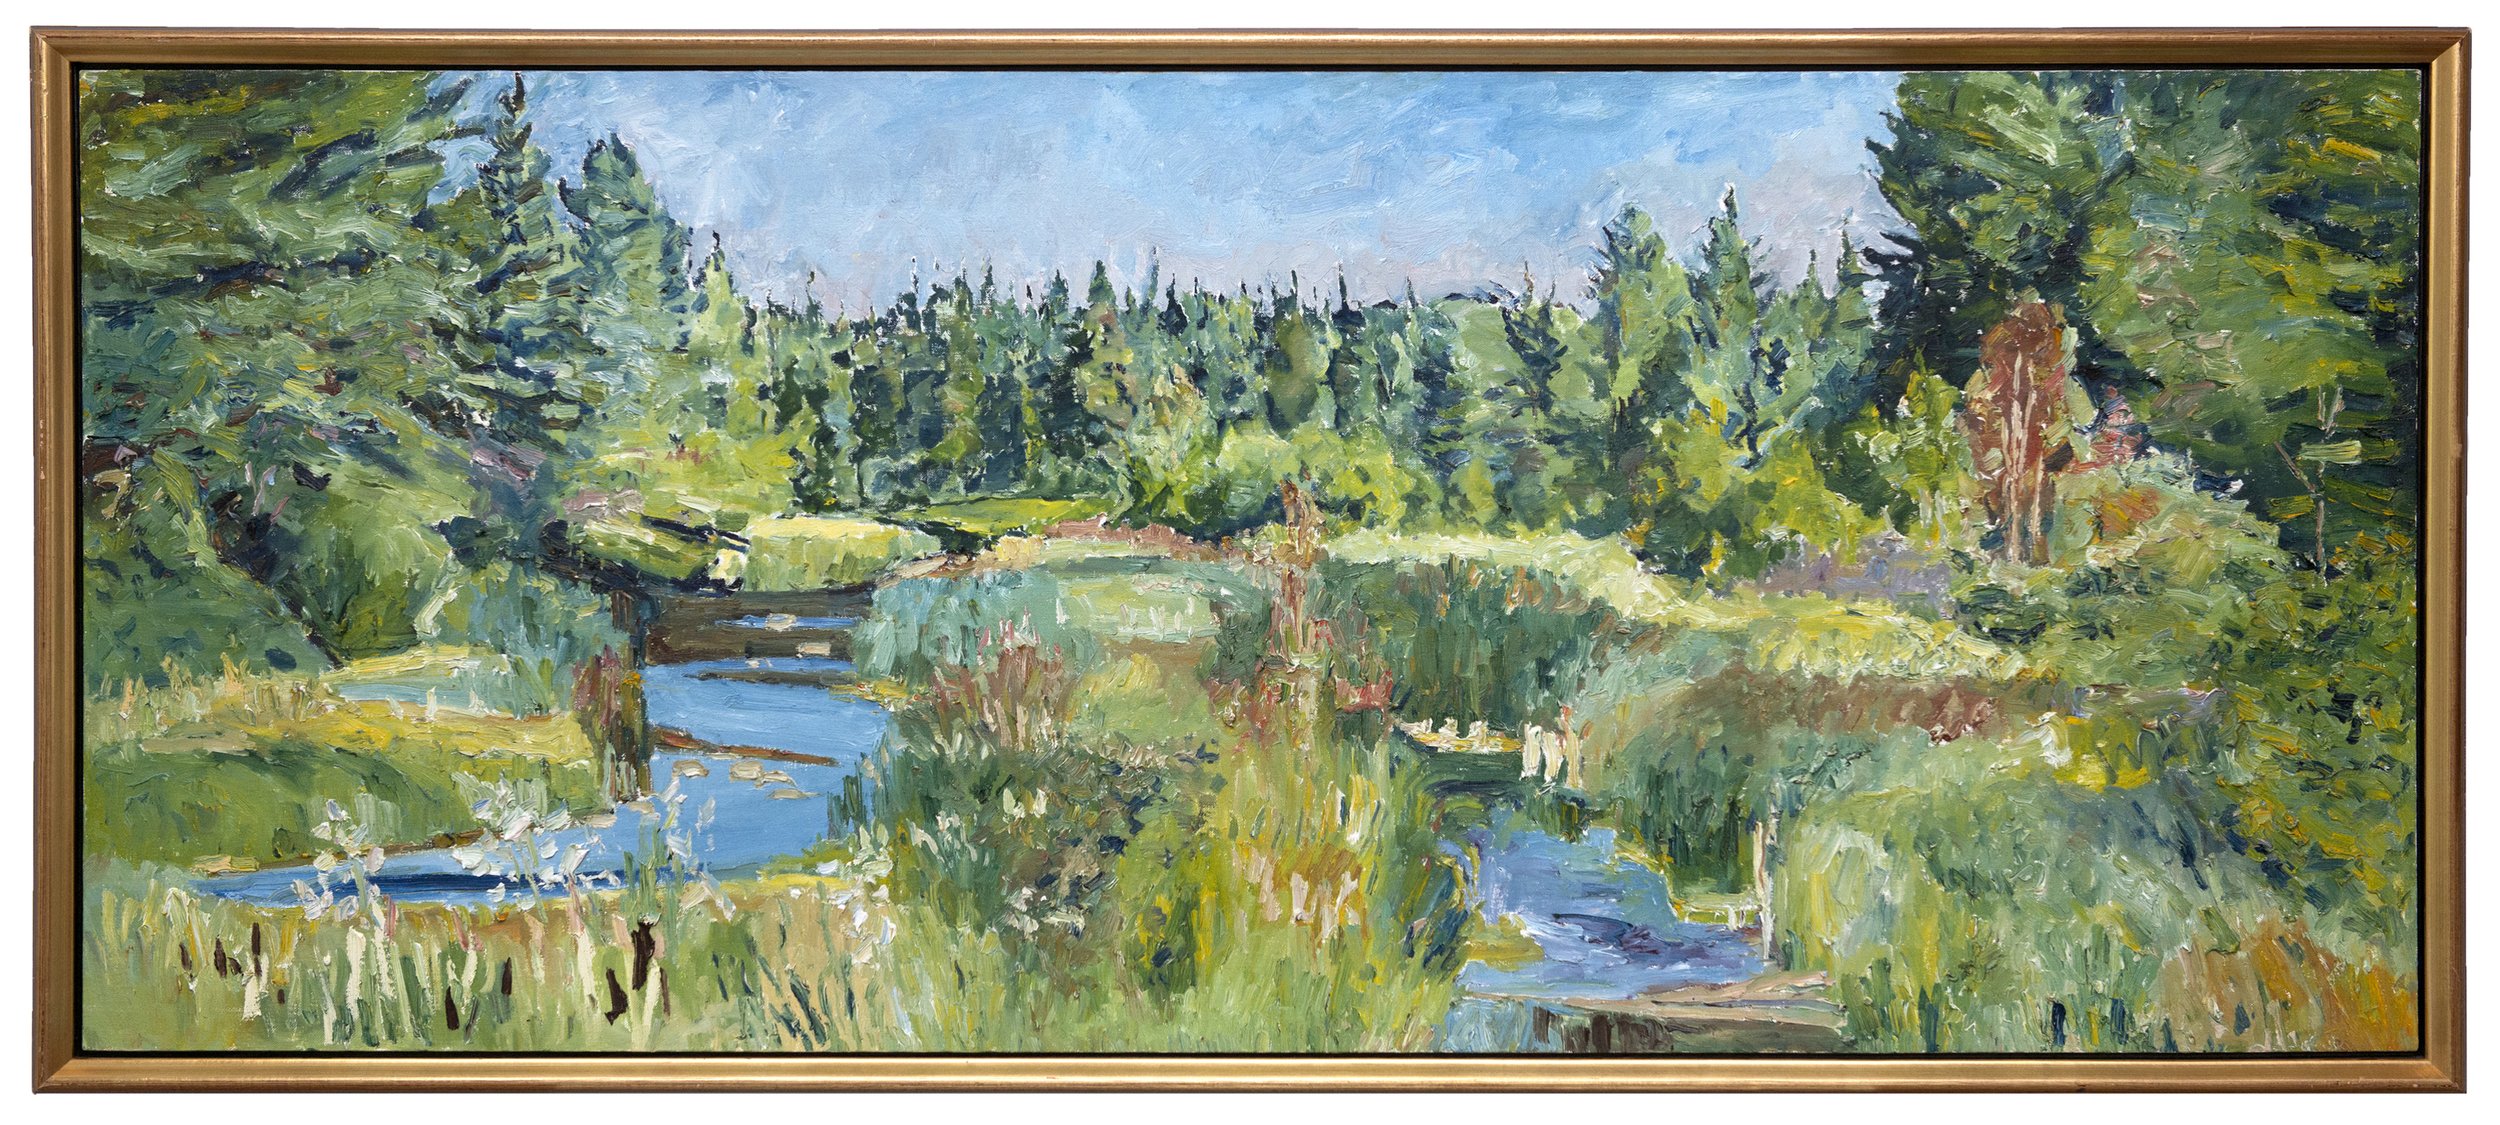 Waskesui in July (OC-16-89) , 1989, 30 x 70 in., oil on canvas 